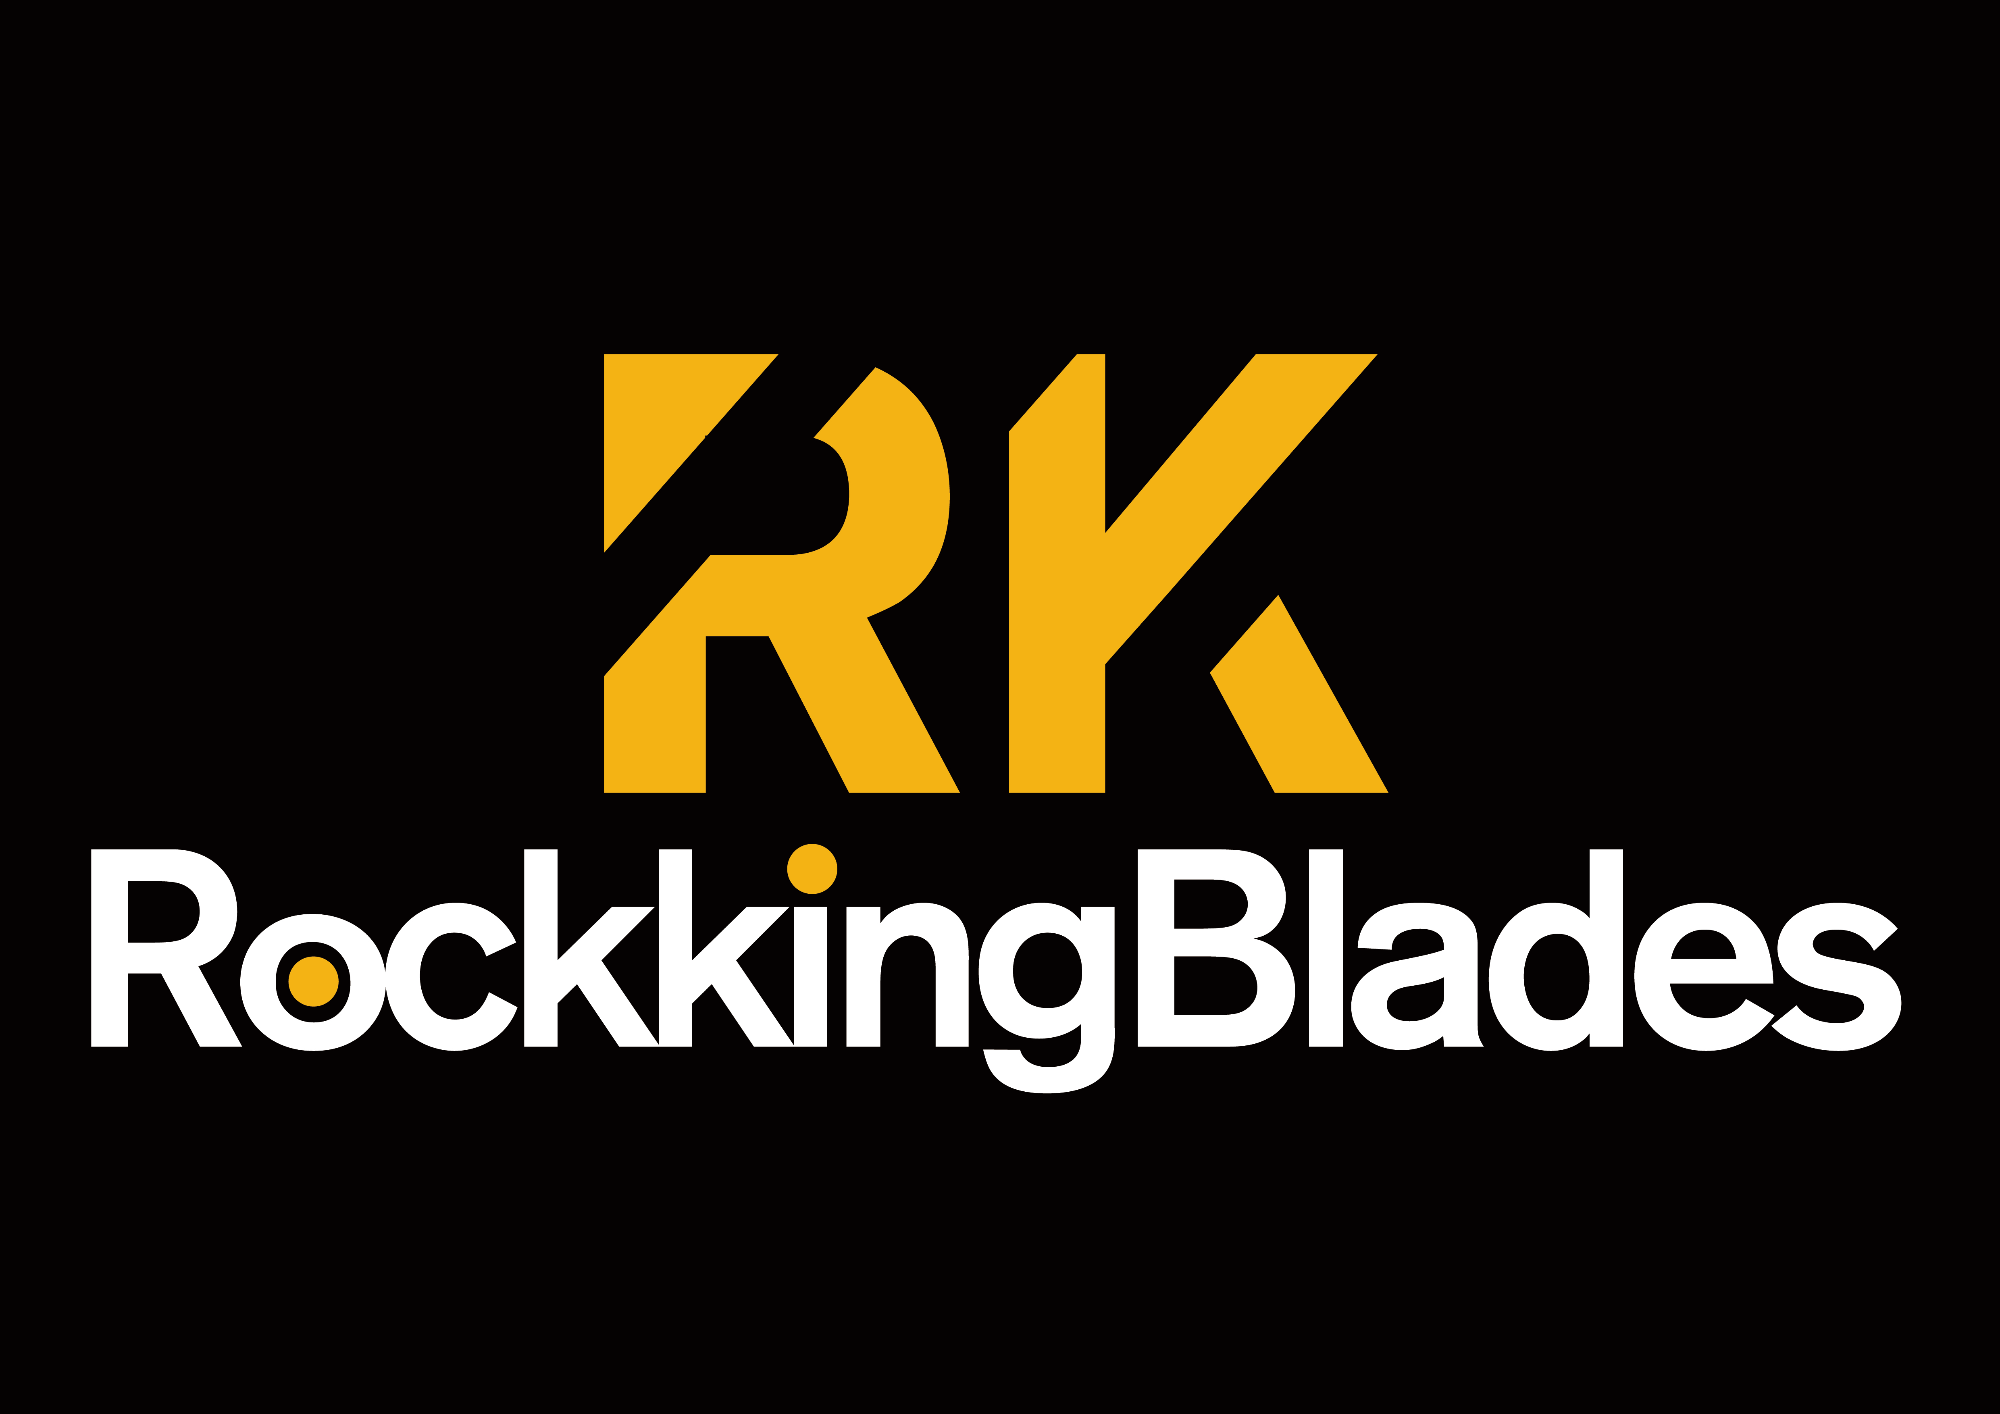 Rockking blades